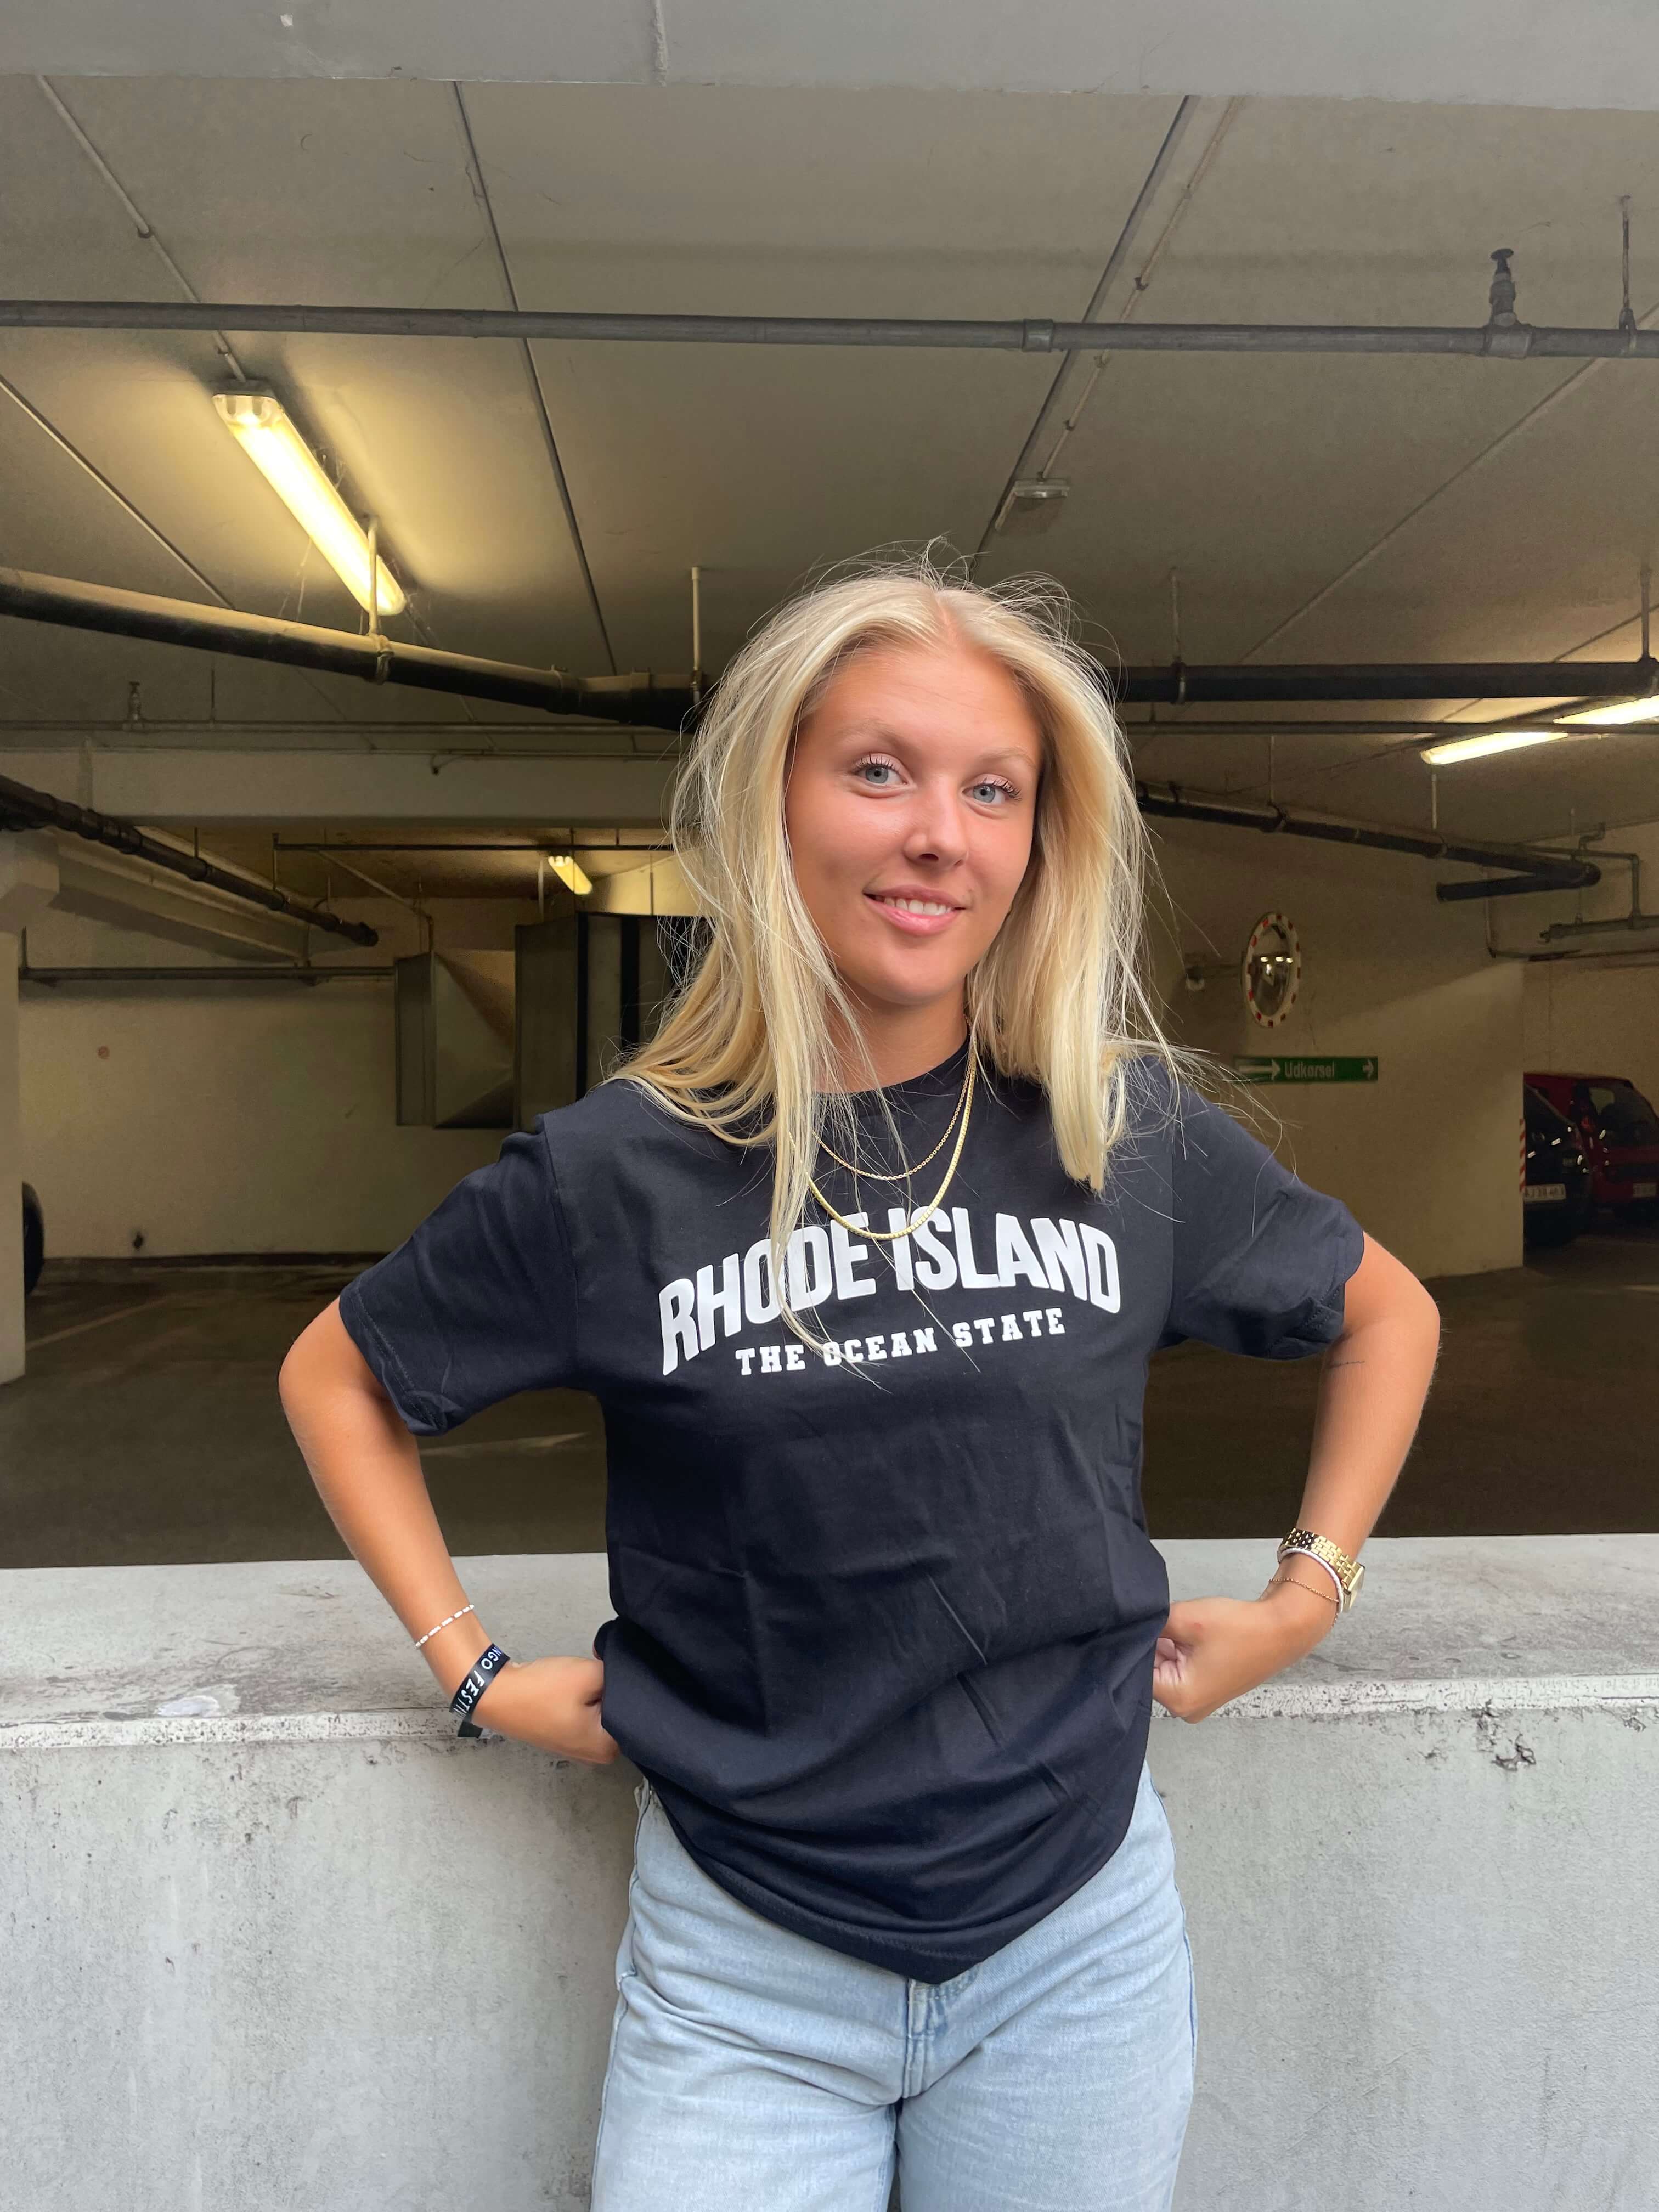 Rhode Island - Sort T-Shirt